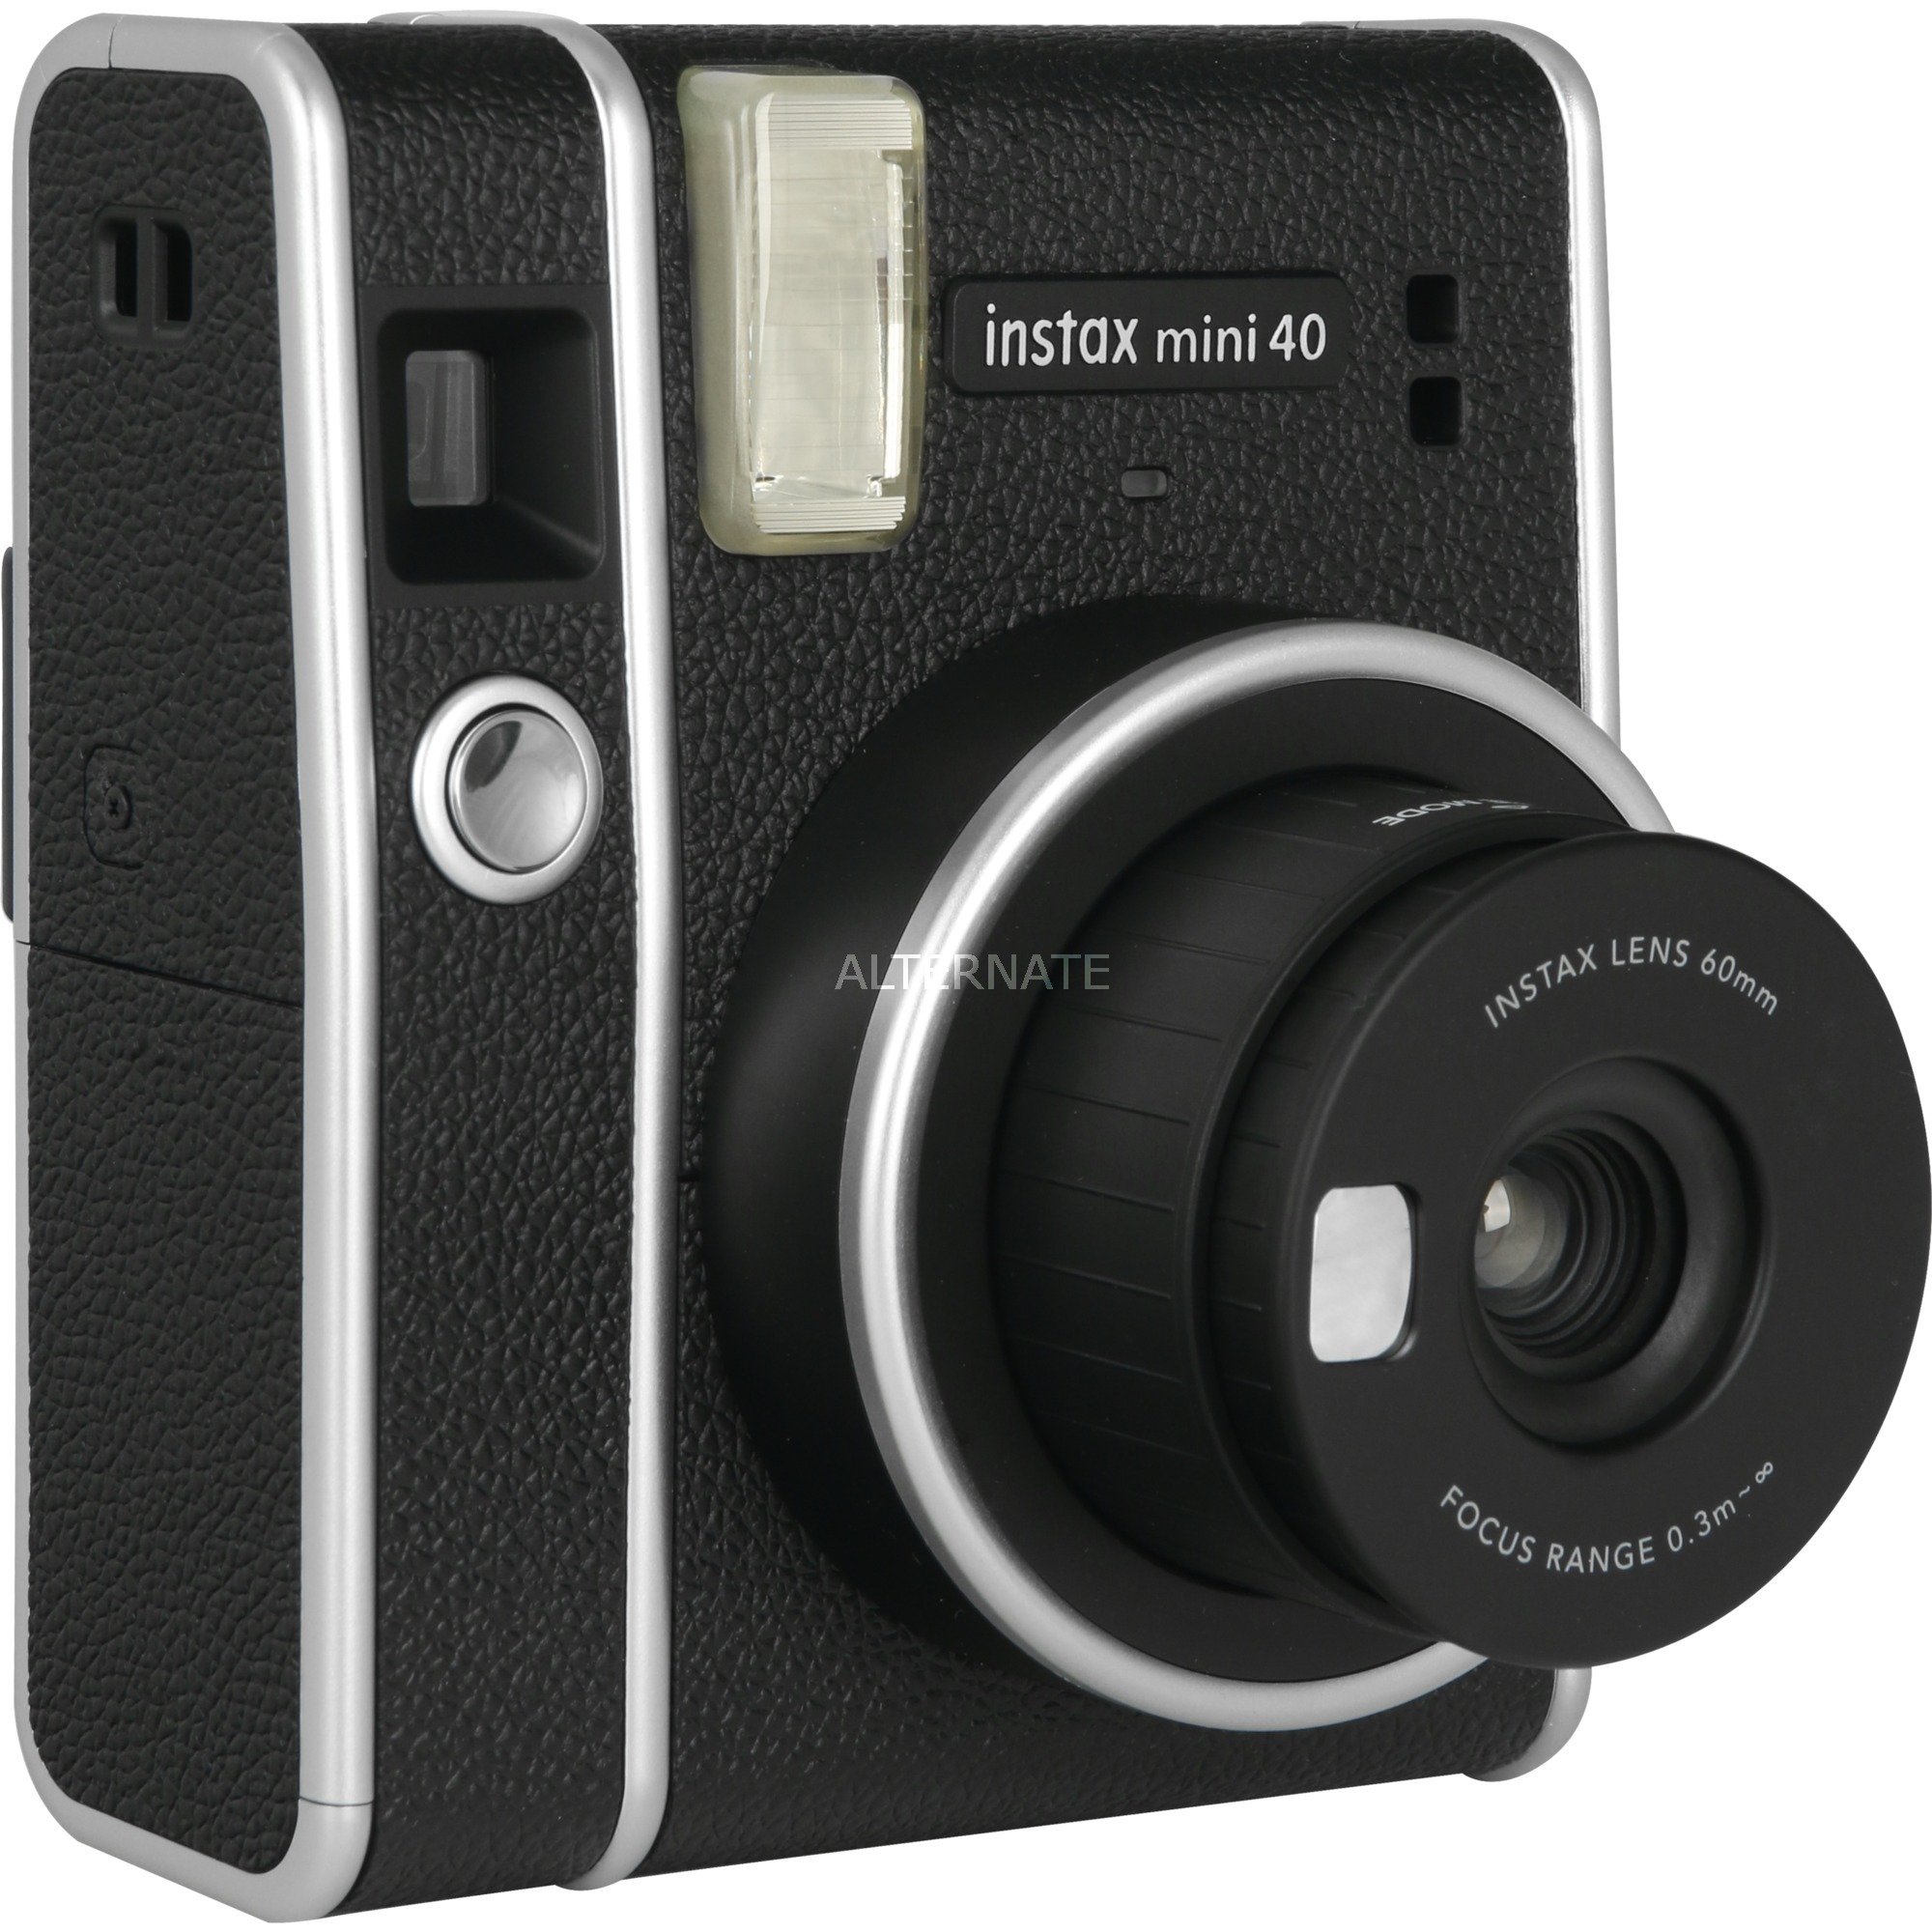 Image of Alternate - instax mini 40, Sofortbildkamera online einkaufen bei Alternate